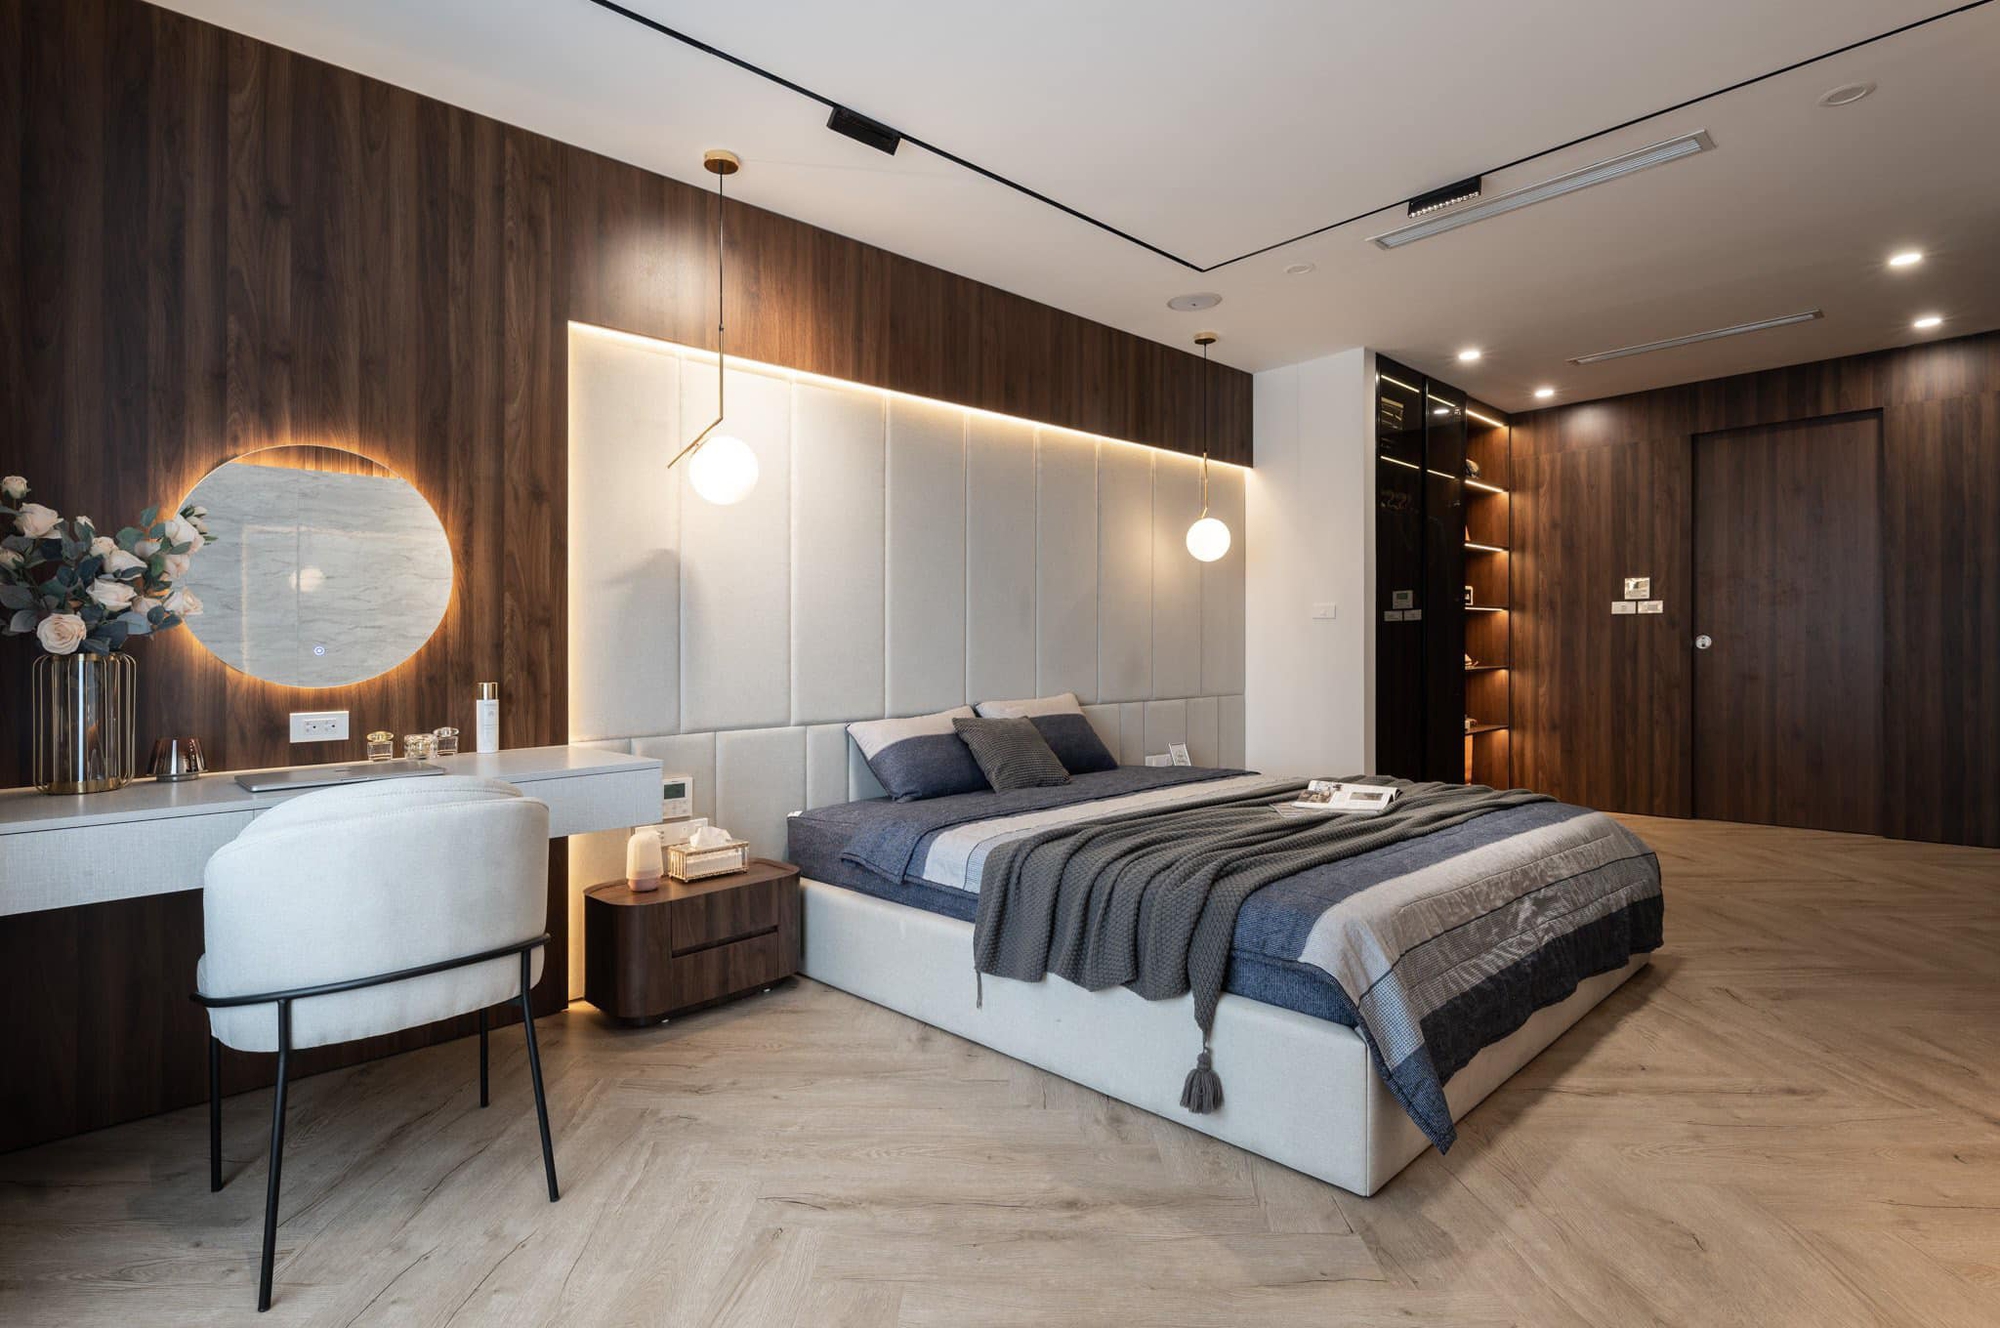 Căn hộ 160m² với 3 phòng ngủ theo phong cách luxury hết chi phí 3 tỷ của cặp vợ chồng ở Hà Nội - Ảnh 8.